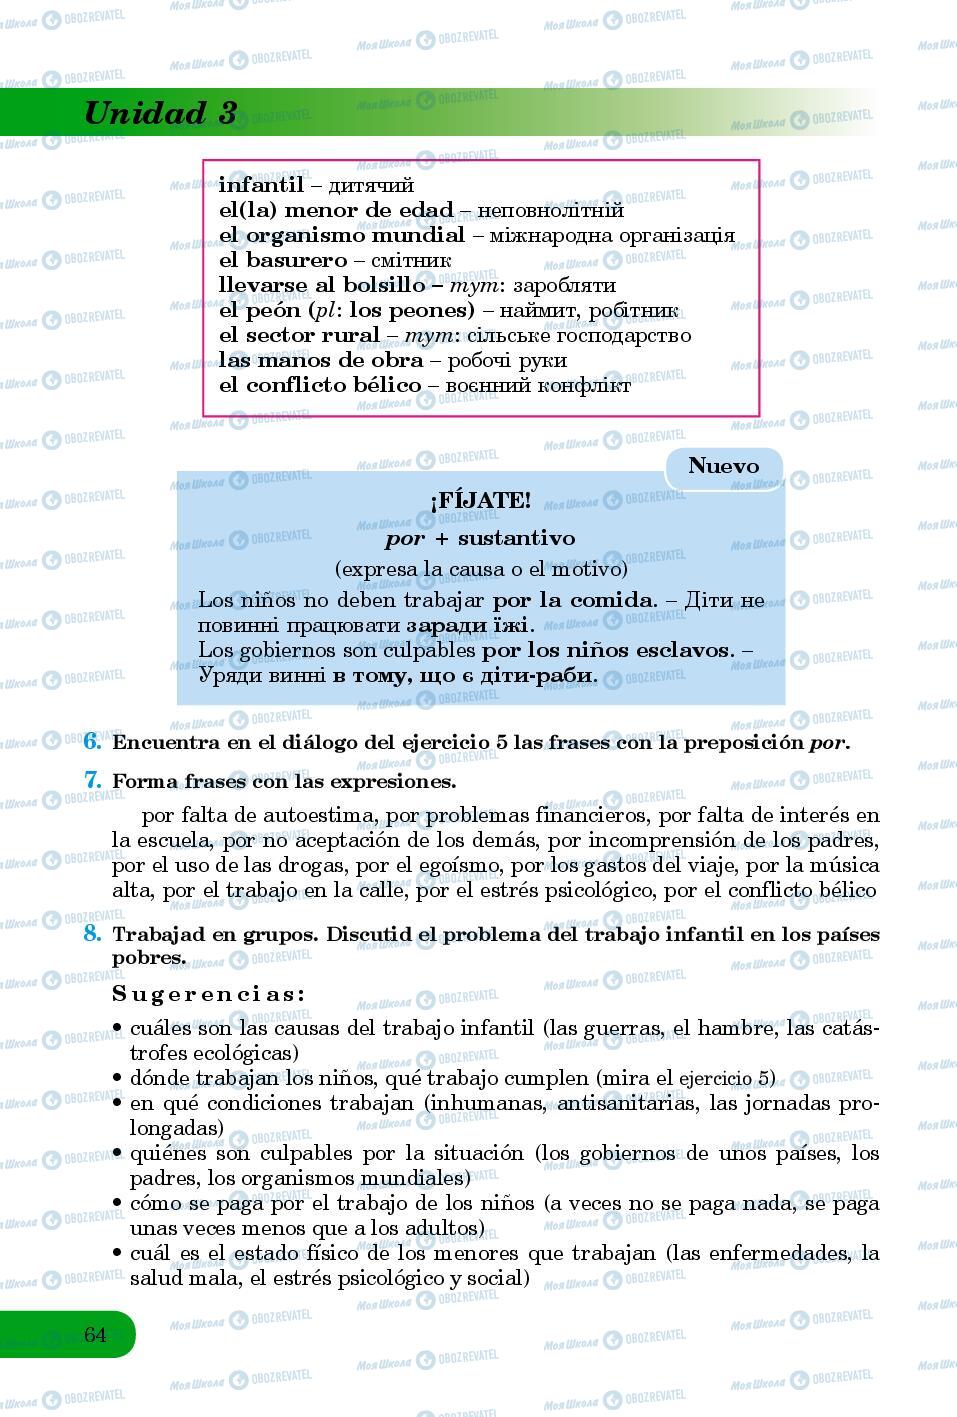 Підручники Іспанська мова 8 клас сторінка 64